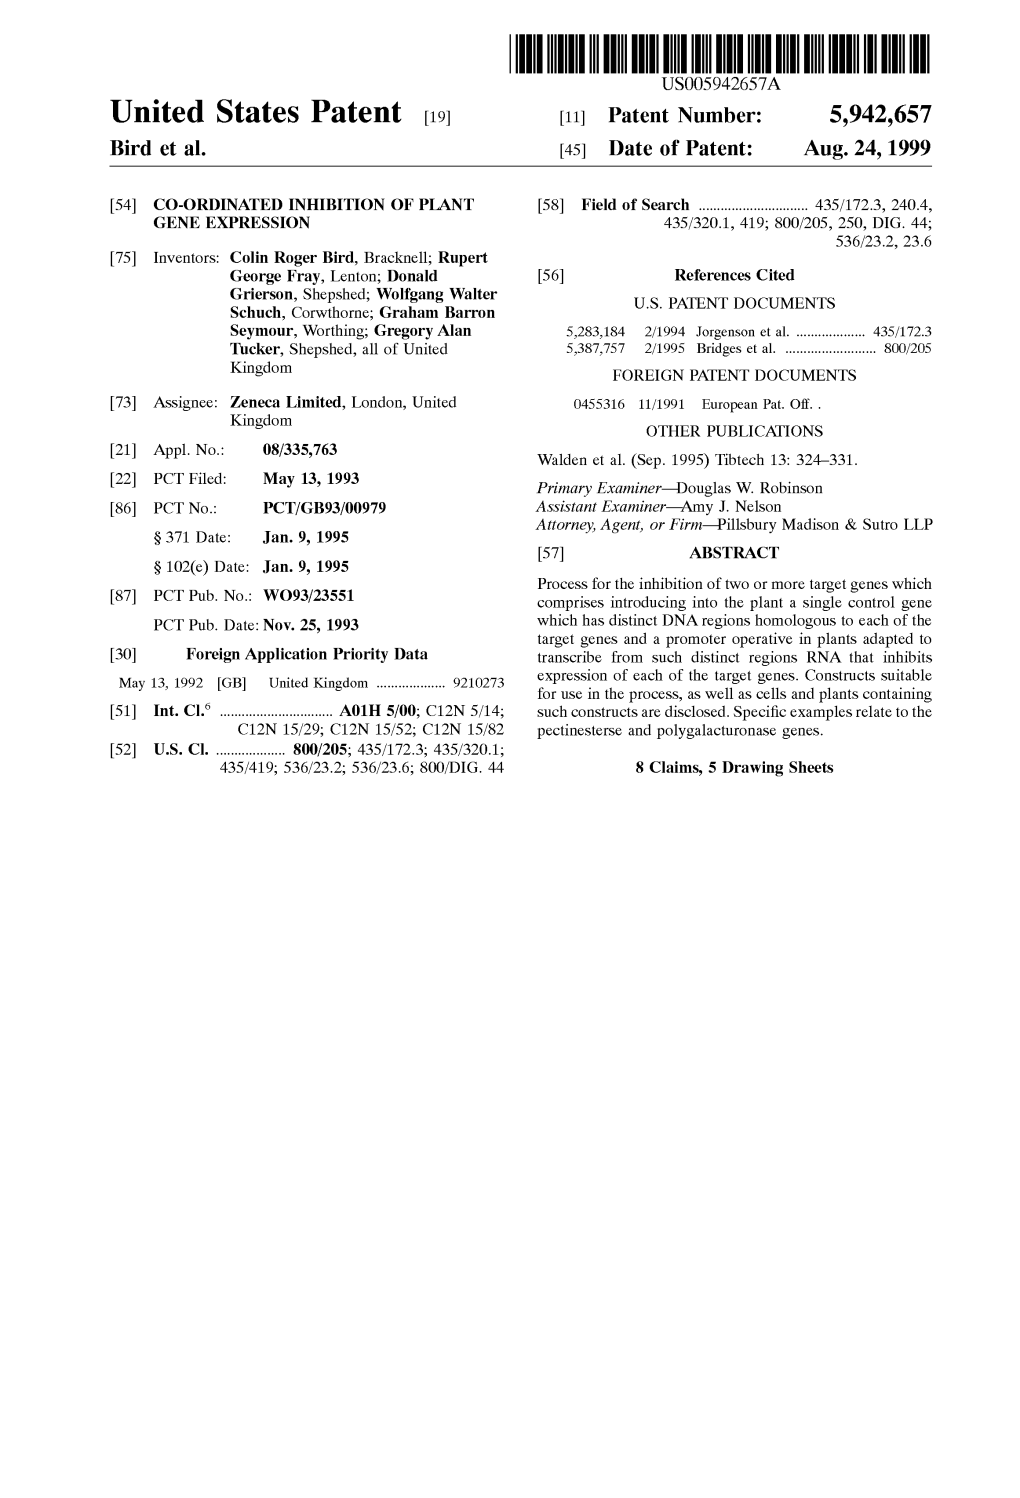 United States Patent (19) 11 Patent Number: 5,942,657 Bird Et Al